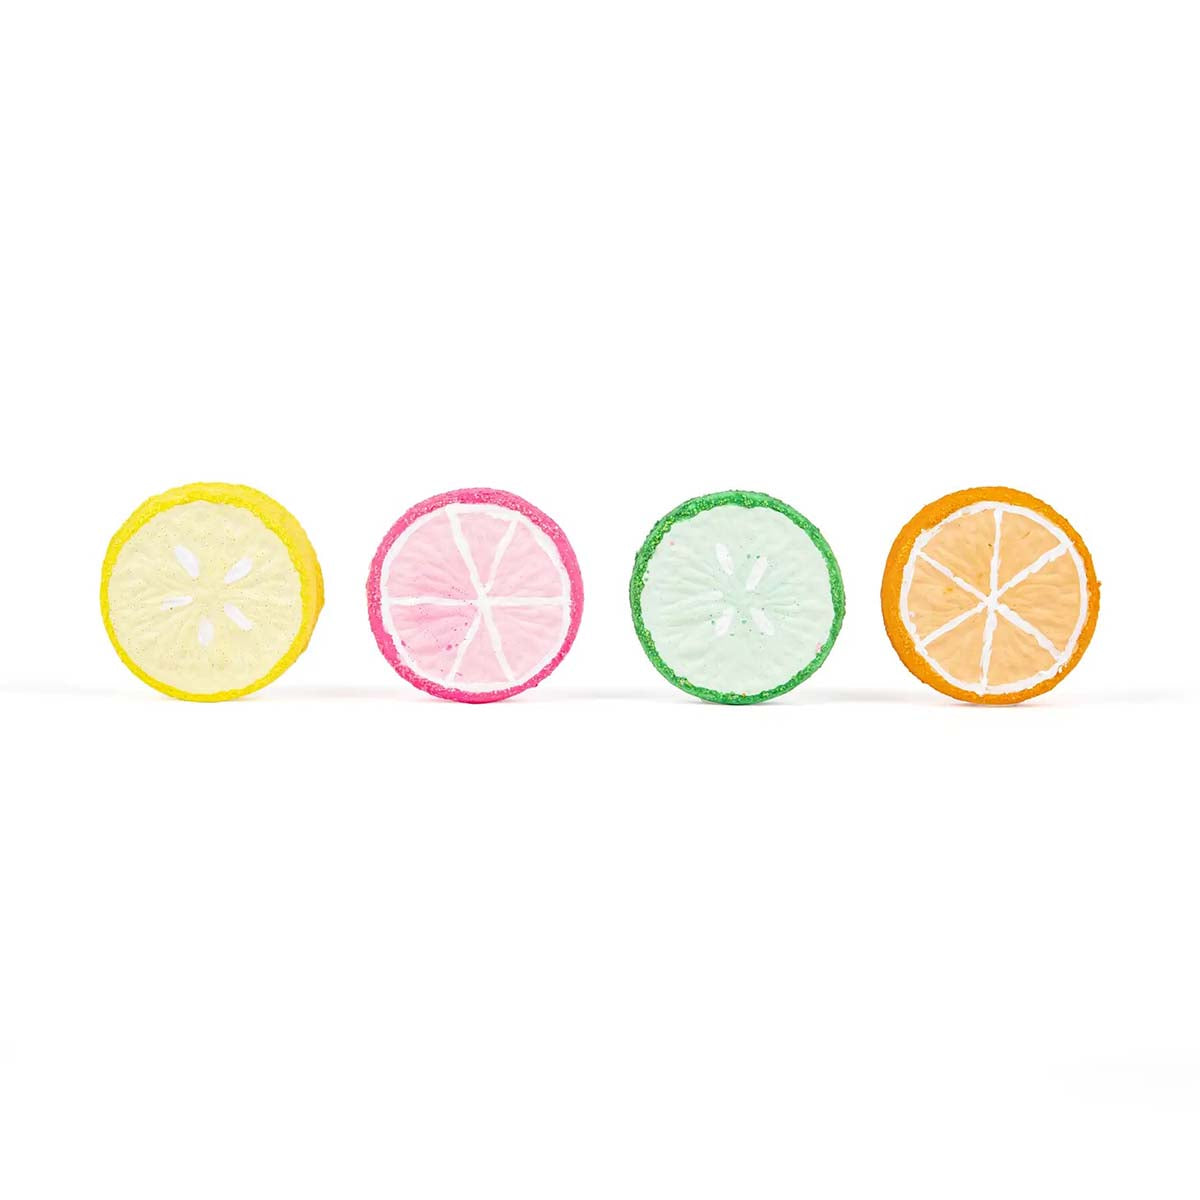 Stoepkrijten is dubbel zo leuk met deze stoepkrijt citrus slices van het merk TWEE. Deze set bestaat uit 4 stoepkrijten in de vorm van een citroenschijf en elke schijf ziet er ook nog eens supervrolijk uit! Deze stoepkrijtset is geel, groen, roze en oranje. VanZus